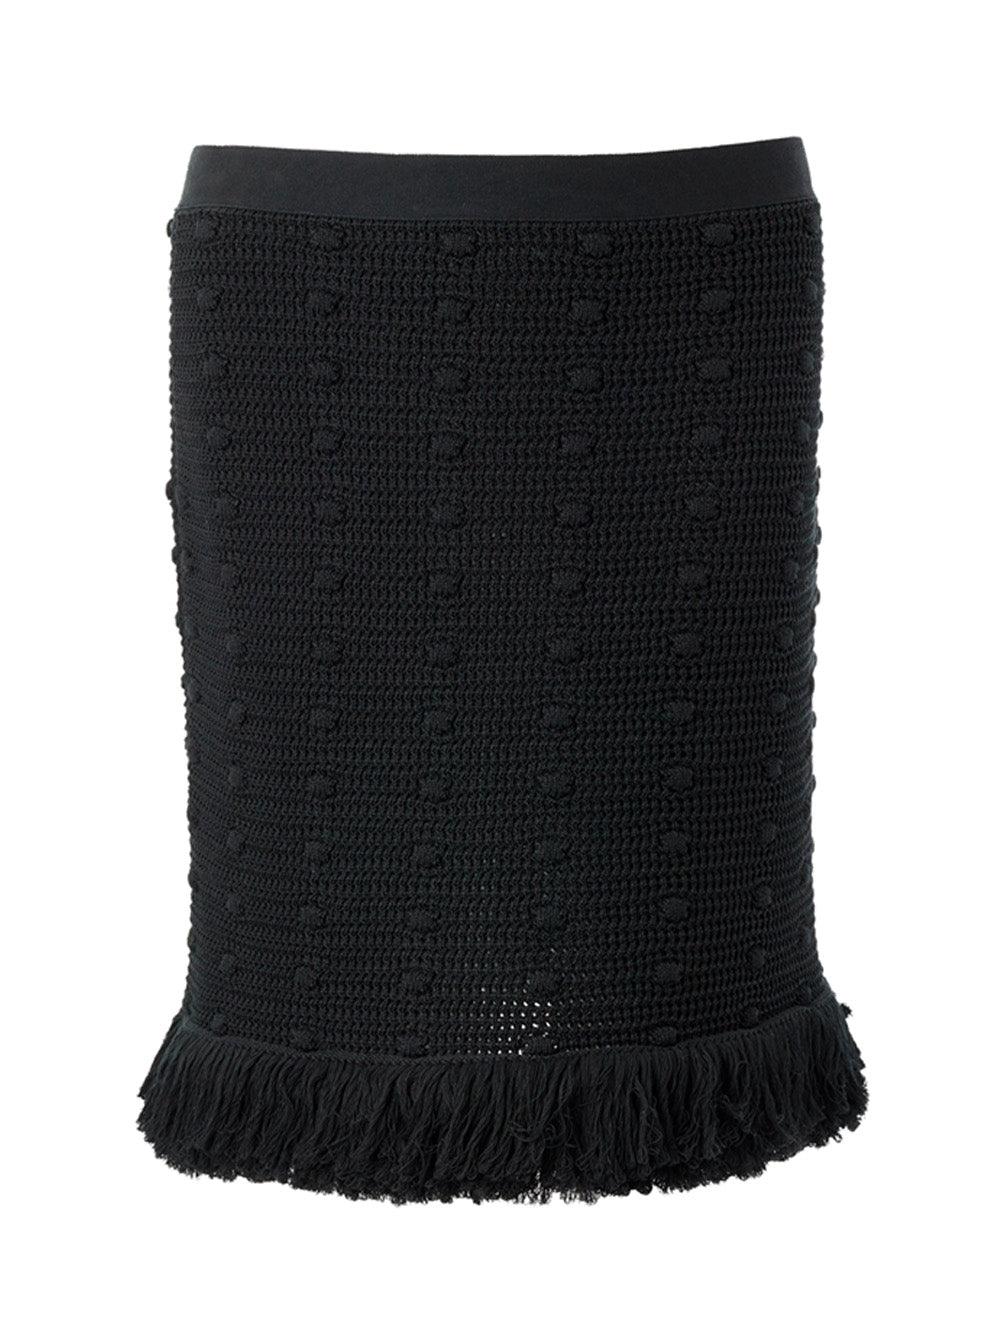 Bottega Veneta Knitted Black Skirt - Ellie Belle